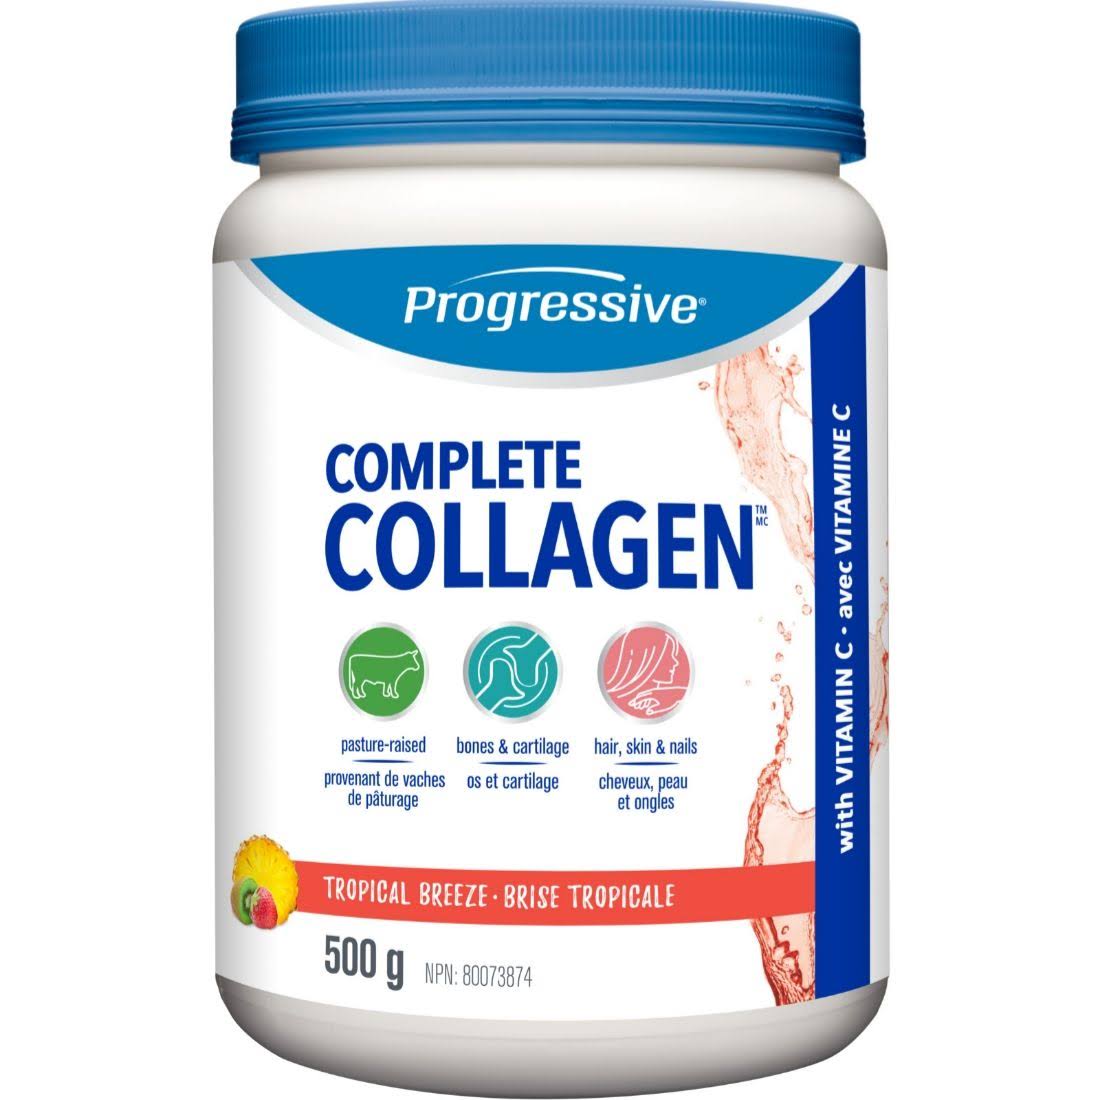 Progressive - Complete Collagen - Tropical Breeze - 500 g